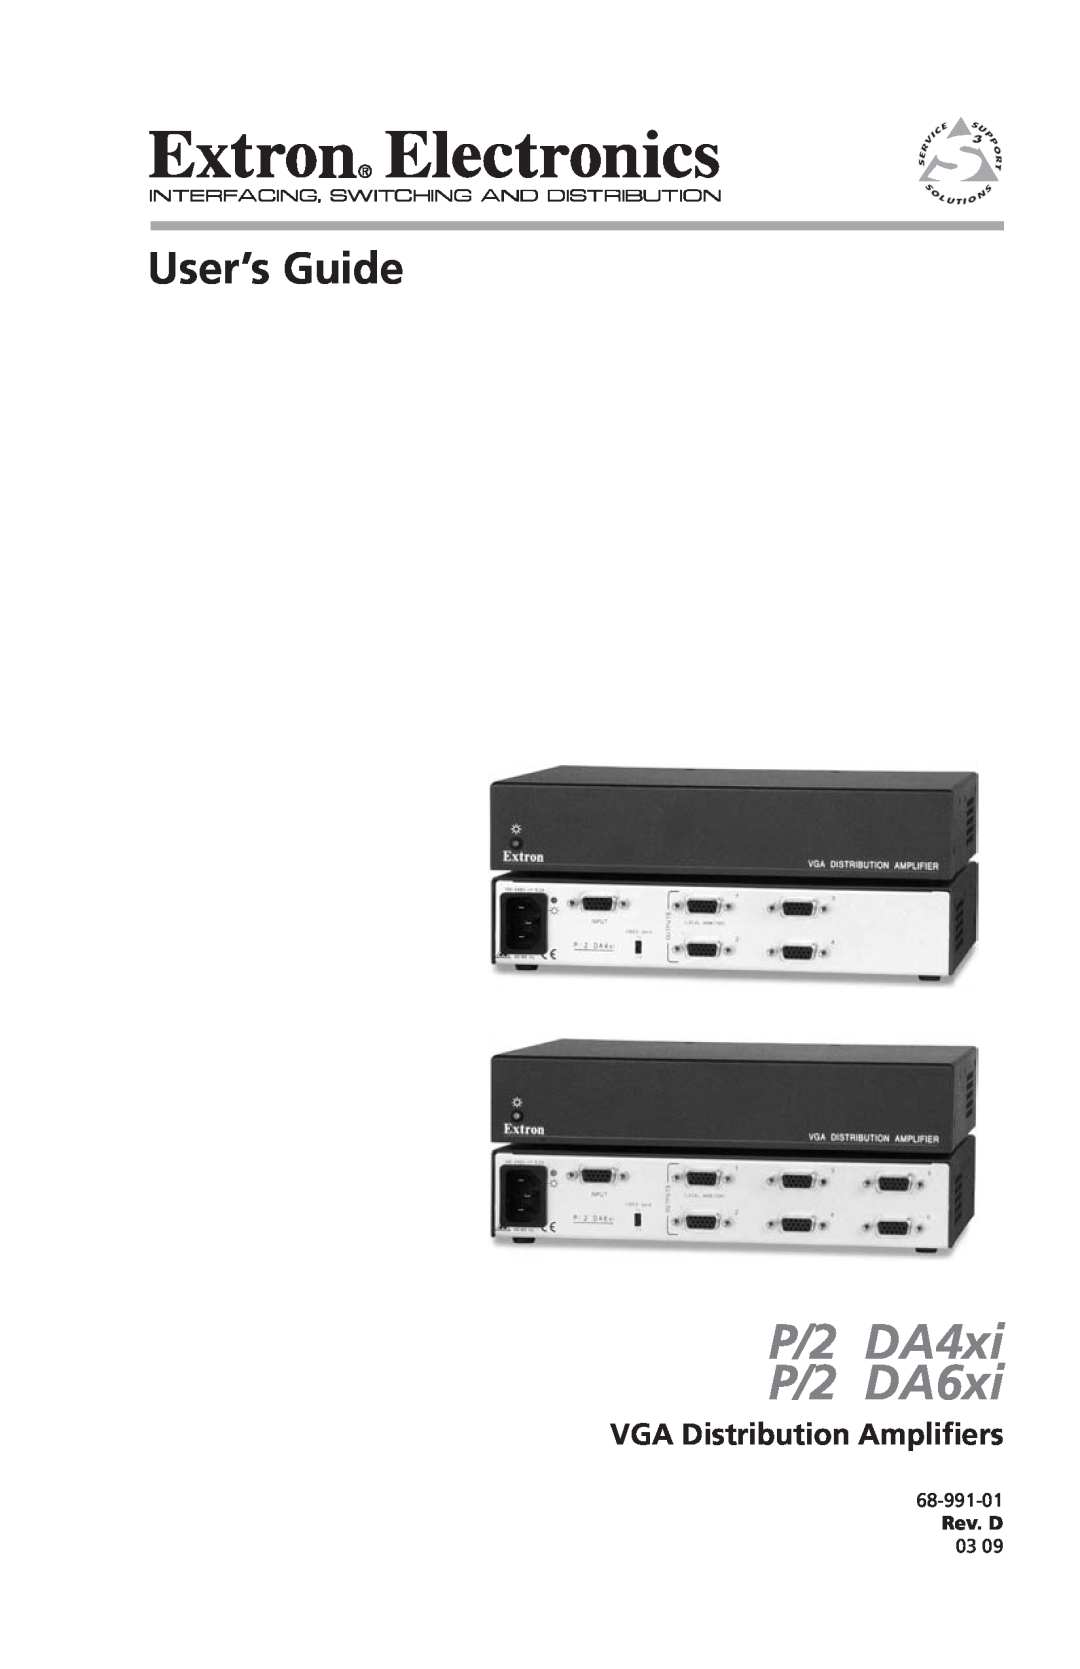 Extron electronic P/2 DA6XI manual VGA Distibution Amplifiers, P/2 DA4xi, P/2 DA6xi, User’s Guide, 68-991-01 Rev. A 